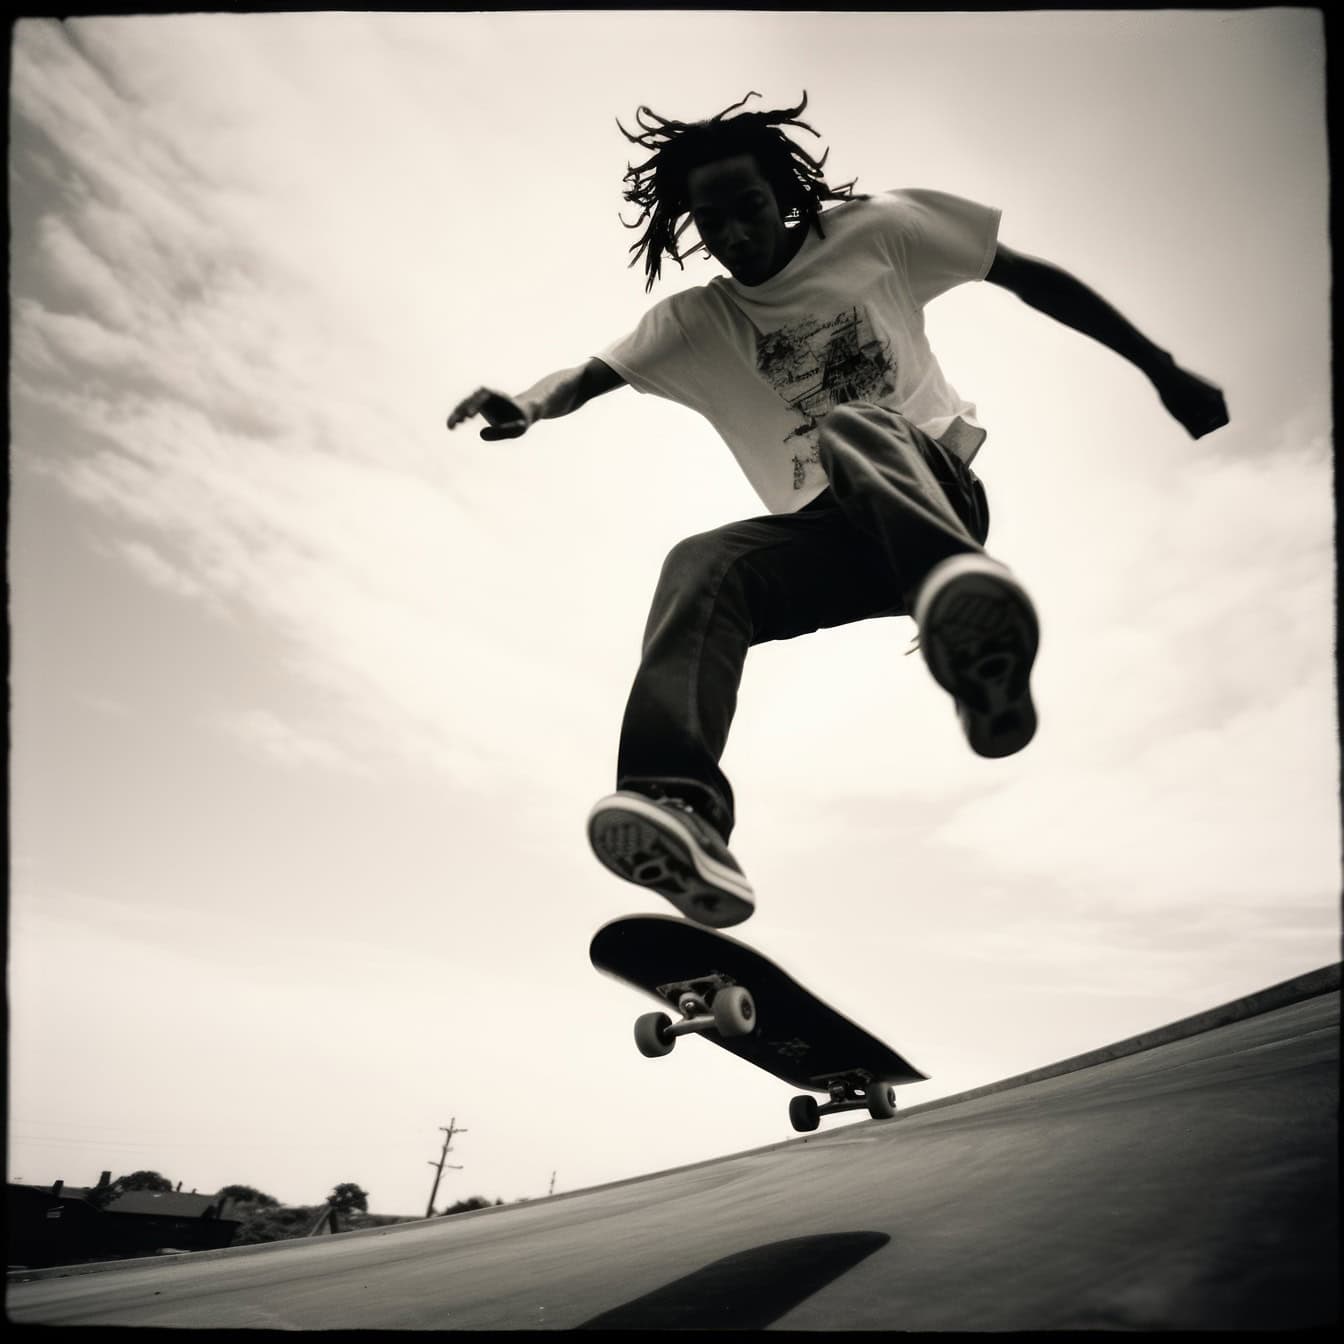 Una vecchia foto polaroid in bianco e nero di una silhouette di un uomo afroamericano che salta in aria su uno skateboard come uno stuntman